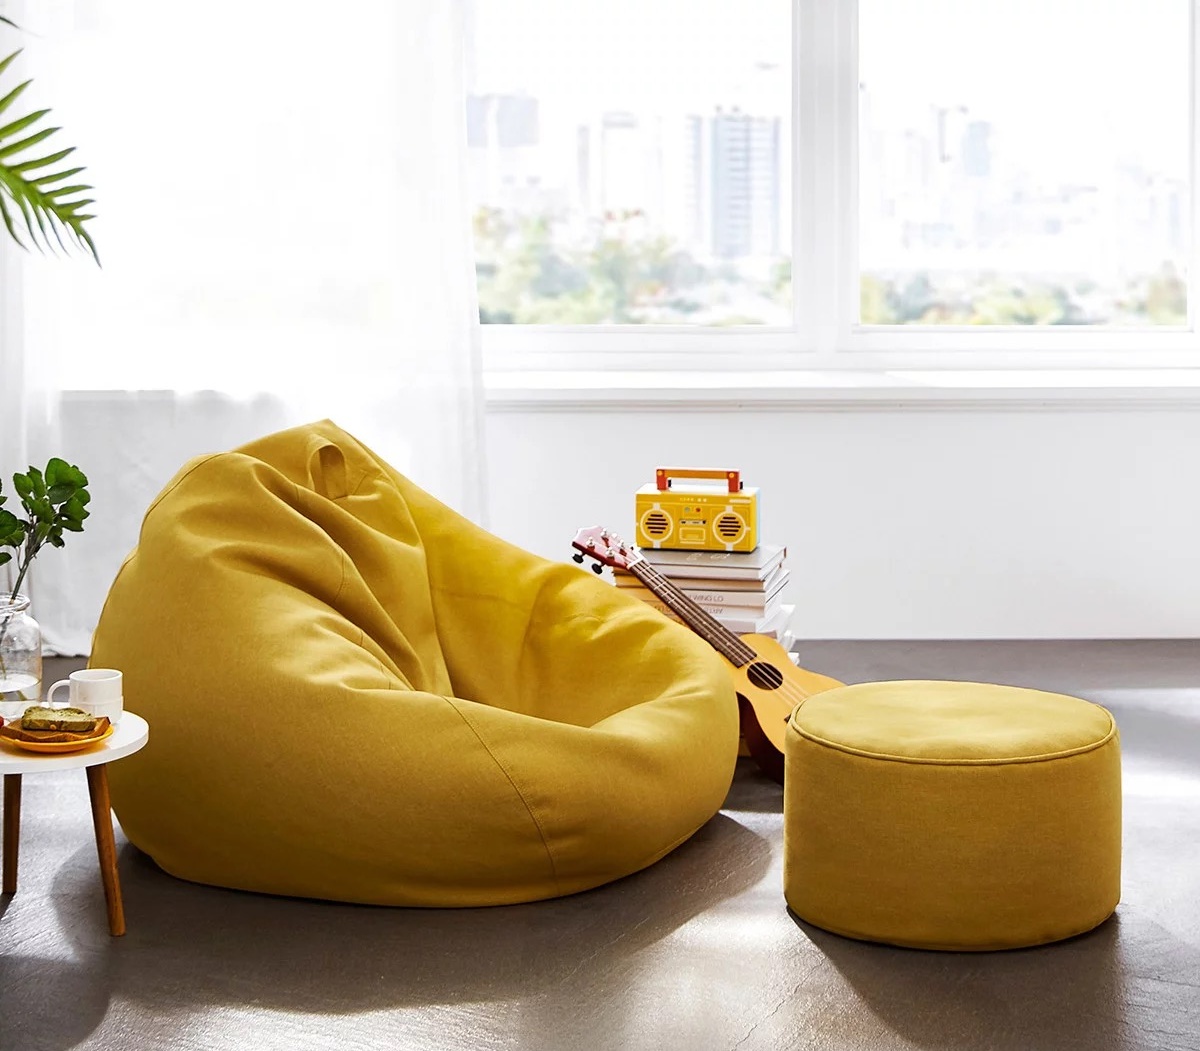 厂家直销 懒人沙发户外沙发充气沙发便携式睡袋可折叠空气沙发床-阿里巴巴